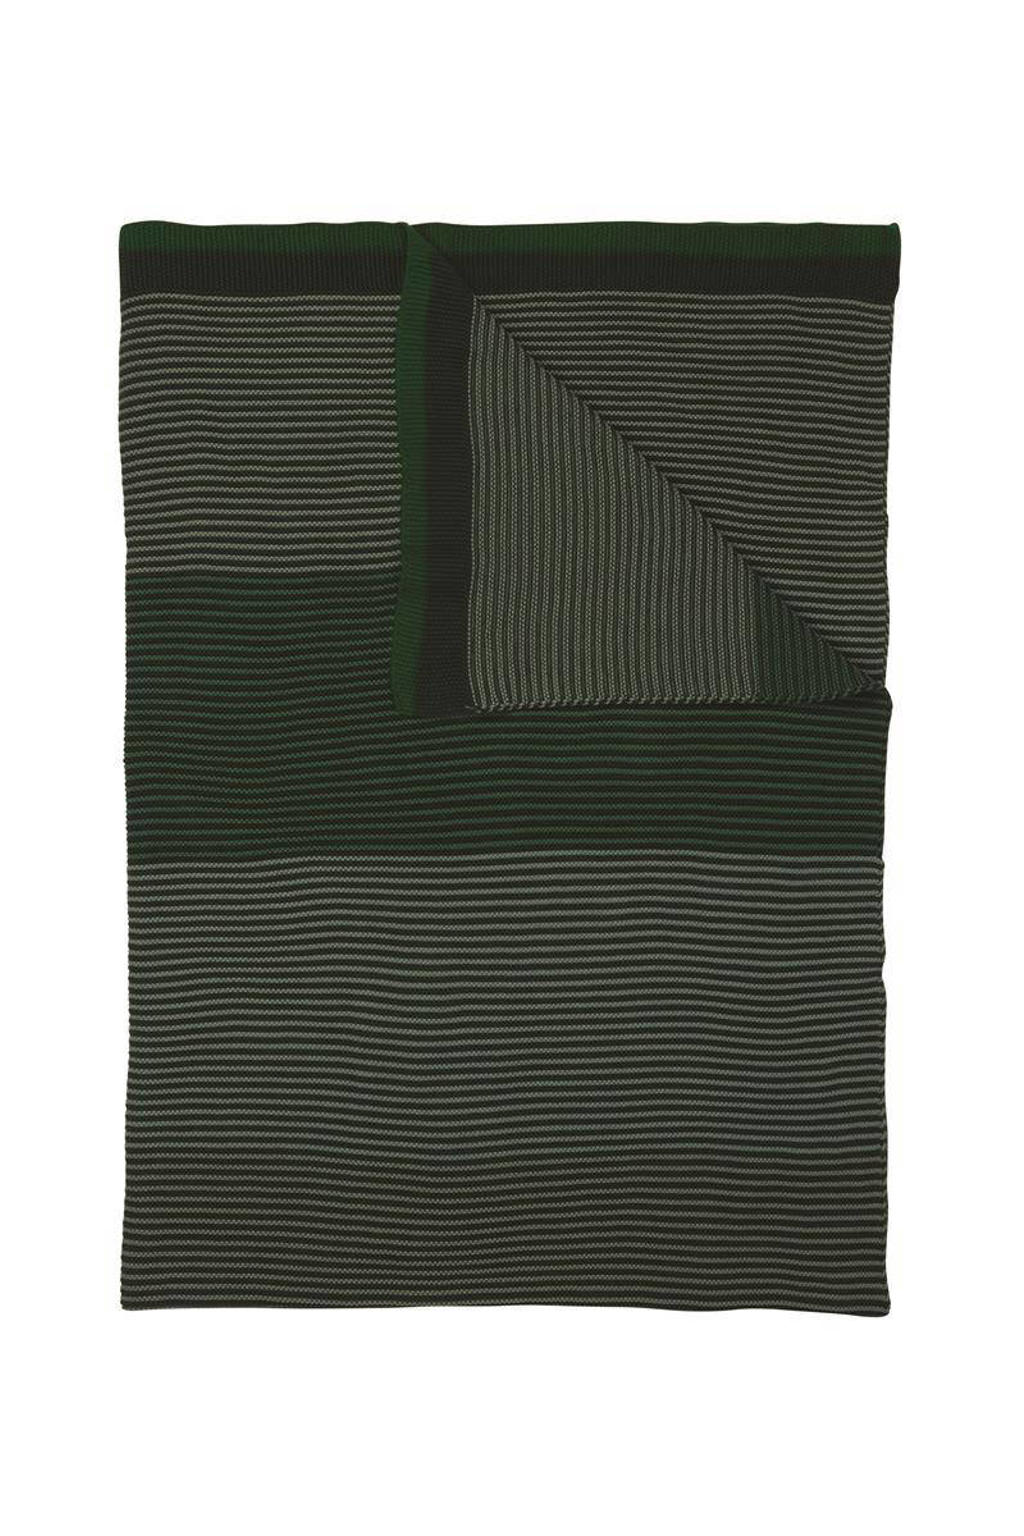 Pip Studio plaid Blockstripe (130x170)  (130x170x1 cm)